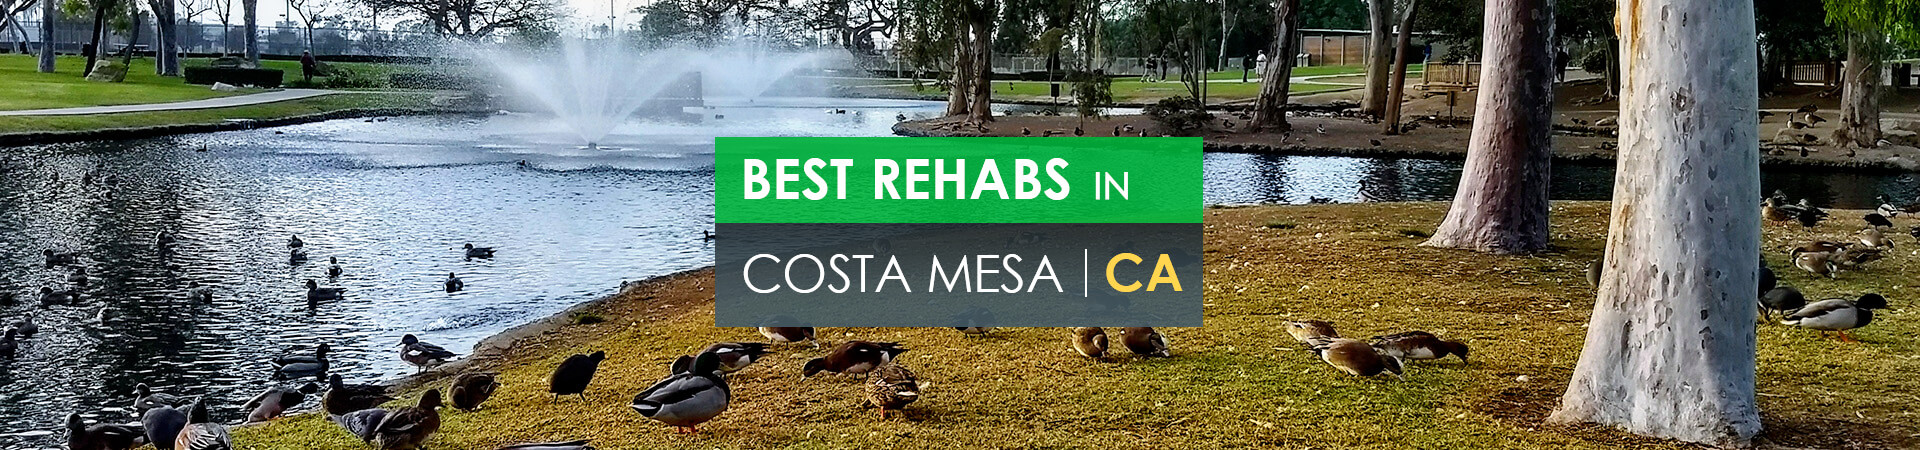 Best rehabs in Costa Mesa, CA